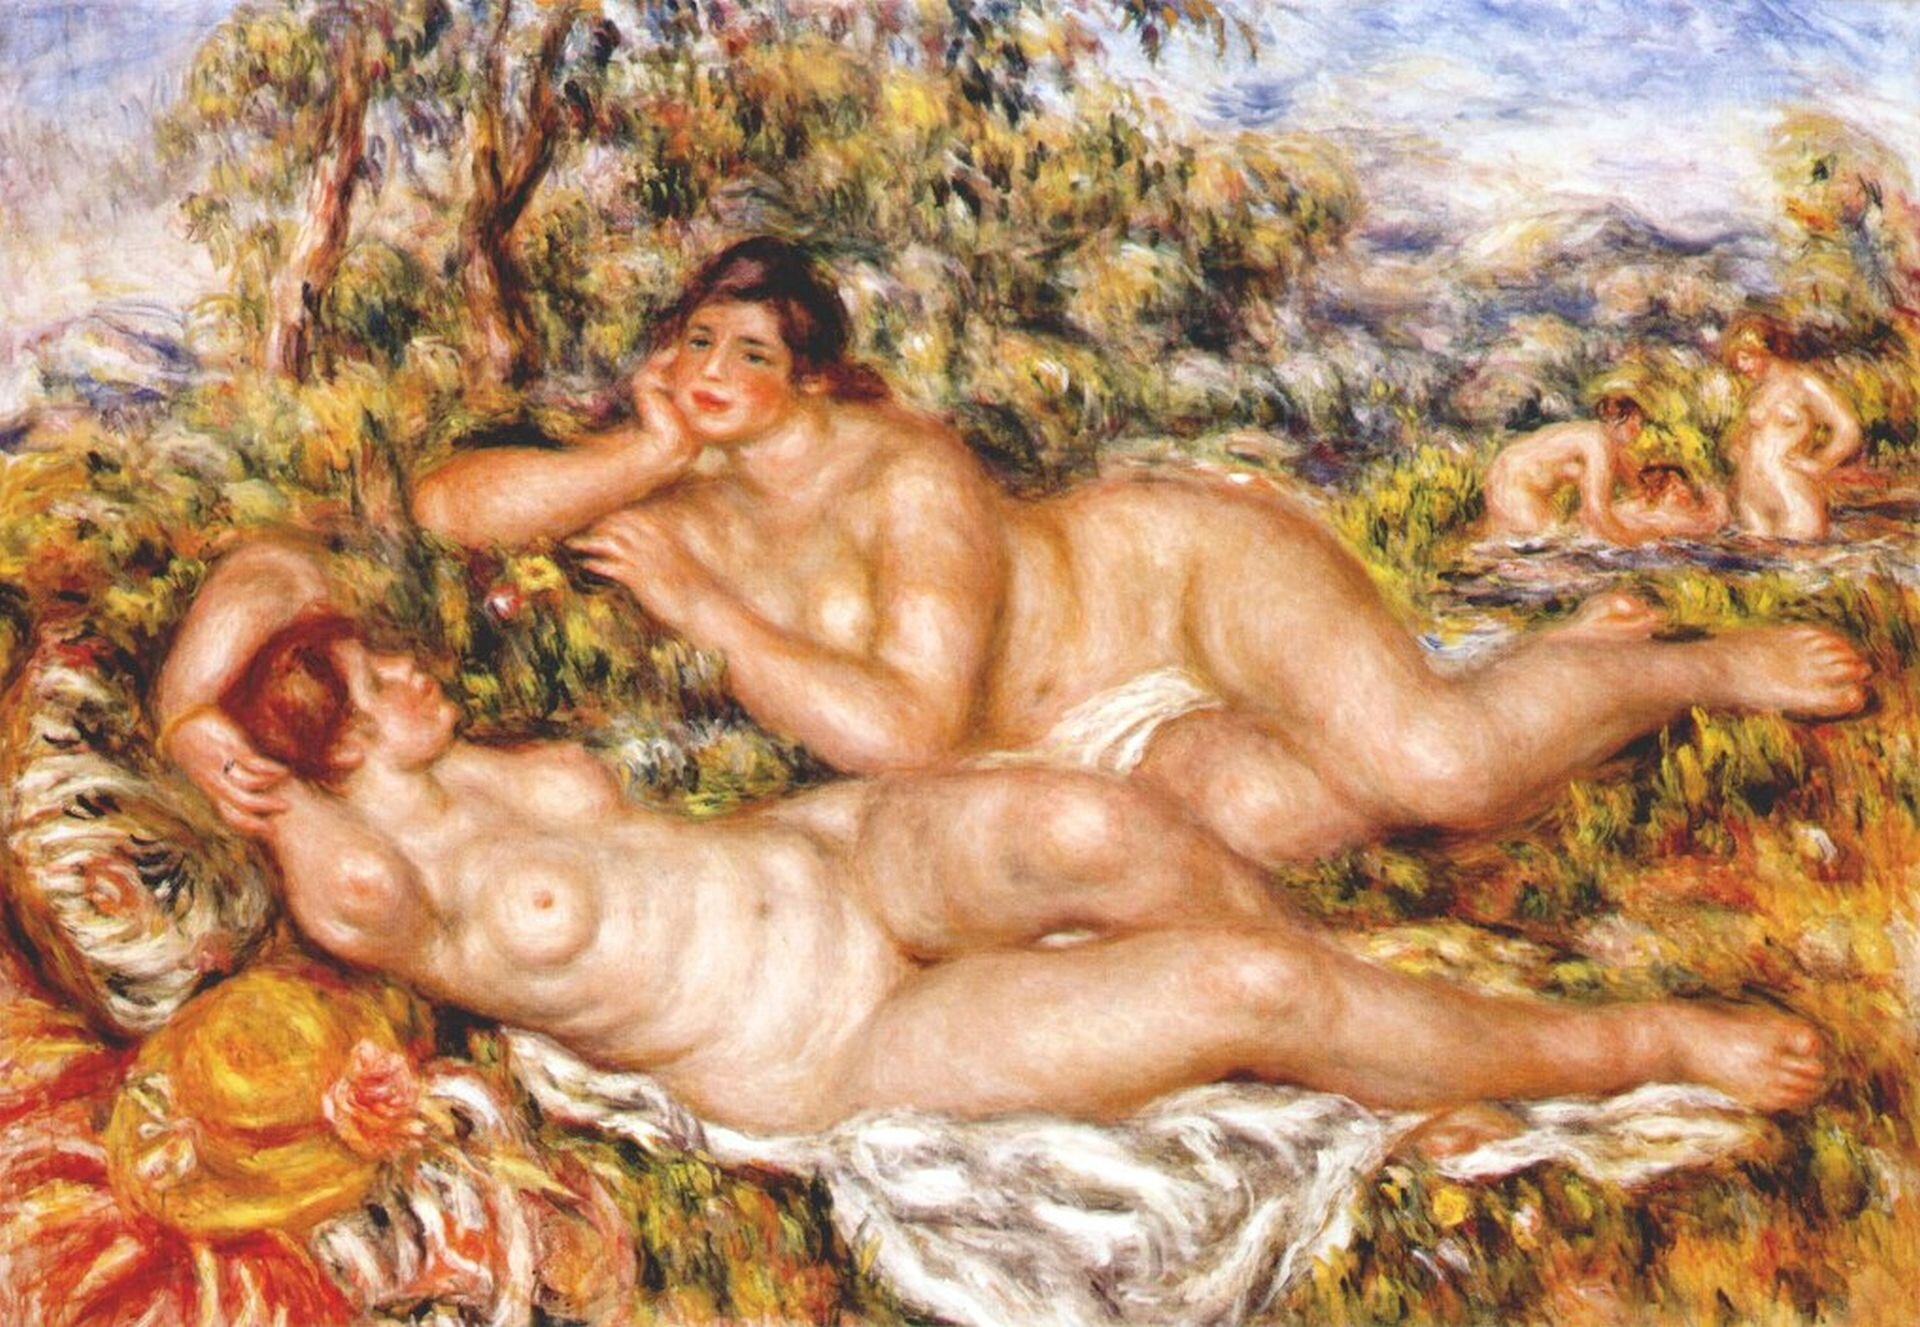 Ilustracja o kształcie poziomego prostokąta przedstawia obraz Auguste Renoira „Kapiące się”. Ukazuje dwie nagie kobiety na tle pejzażu. Są one integralną częścią scenerii. Obraz uważany przez twórcę za szczytowe swoje osiągnięcie.